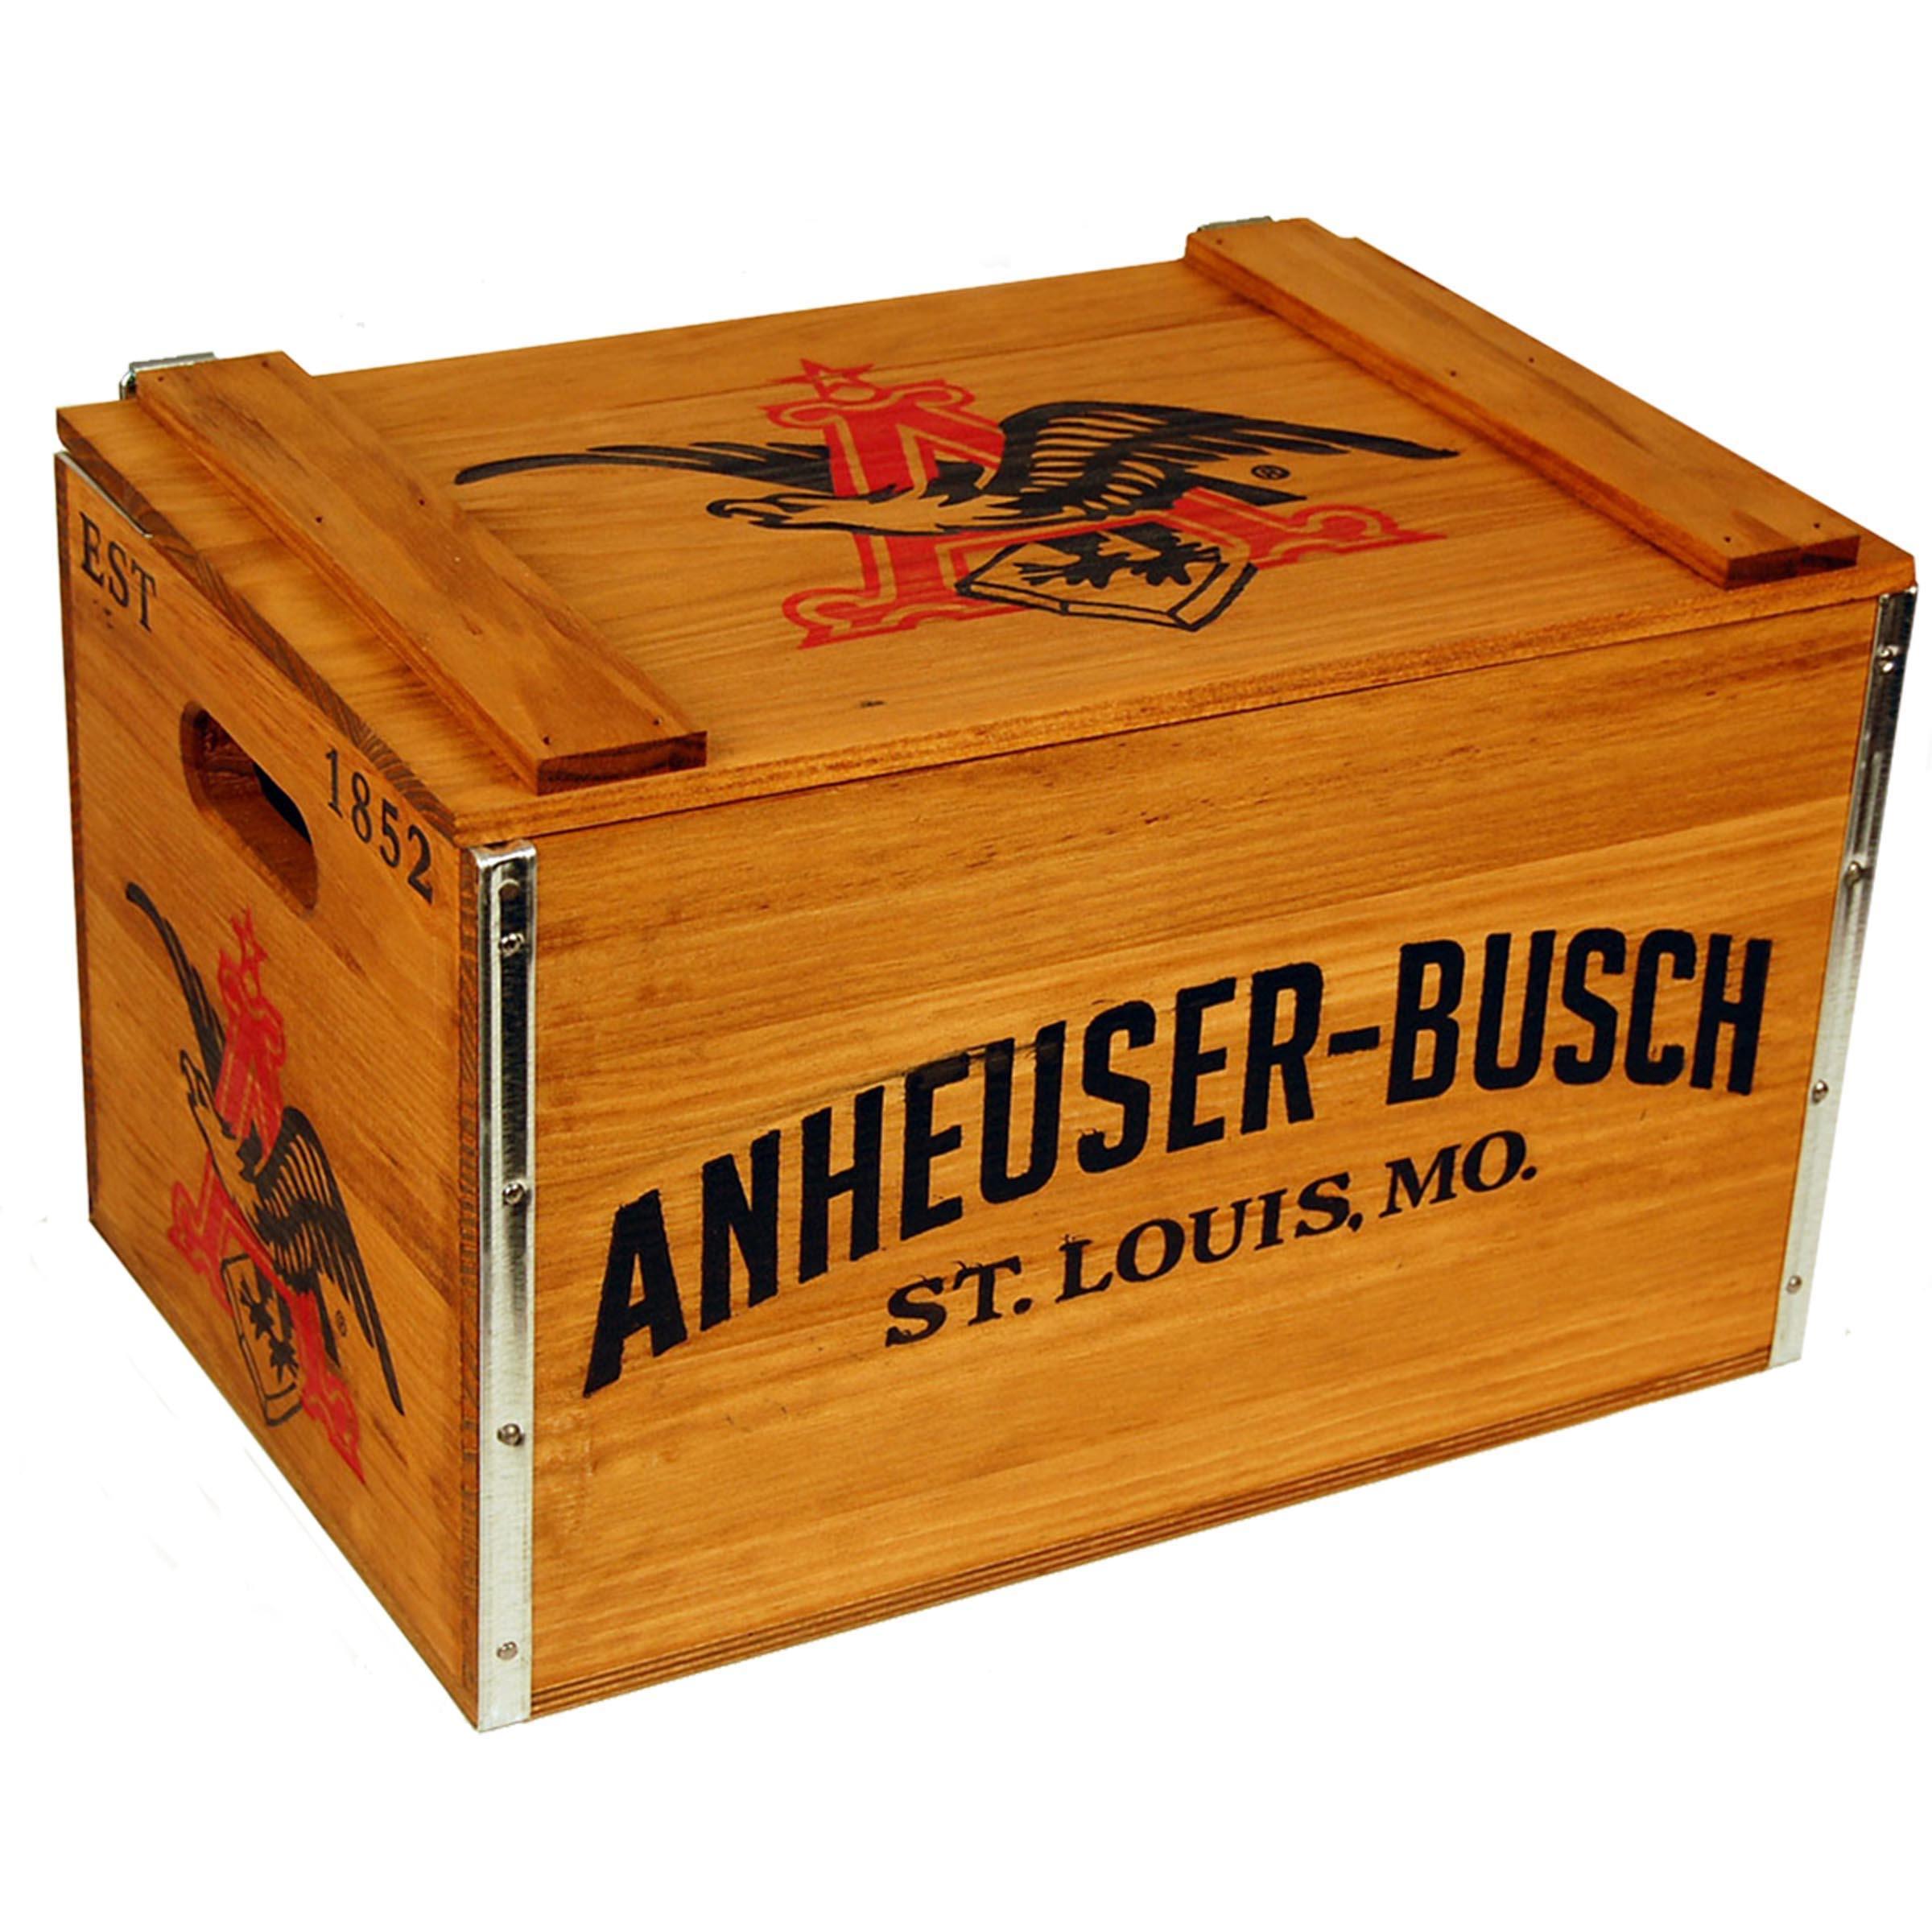 http://www.shopbeergear.com/cdn/shop/files/anheuser-busch-vintage-beer-crate-large.jpg?v=1701091591